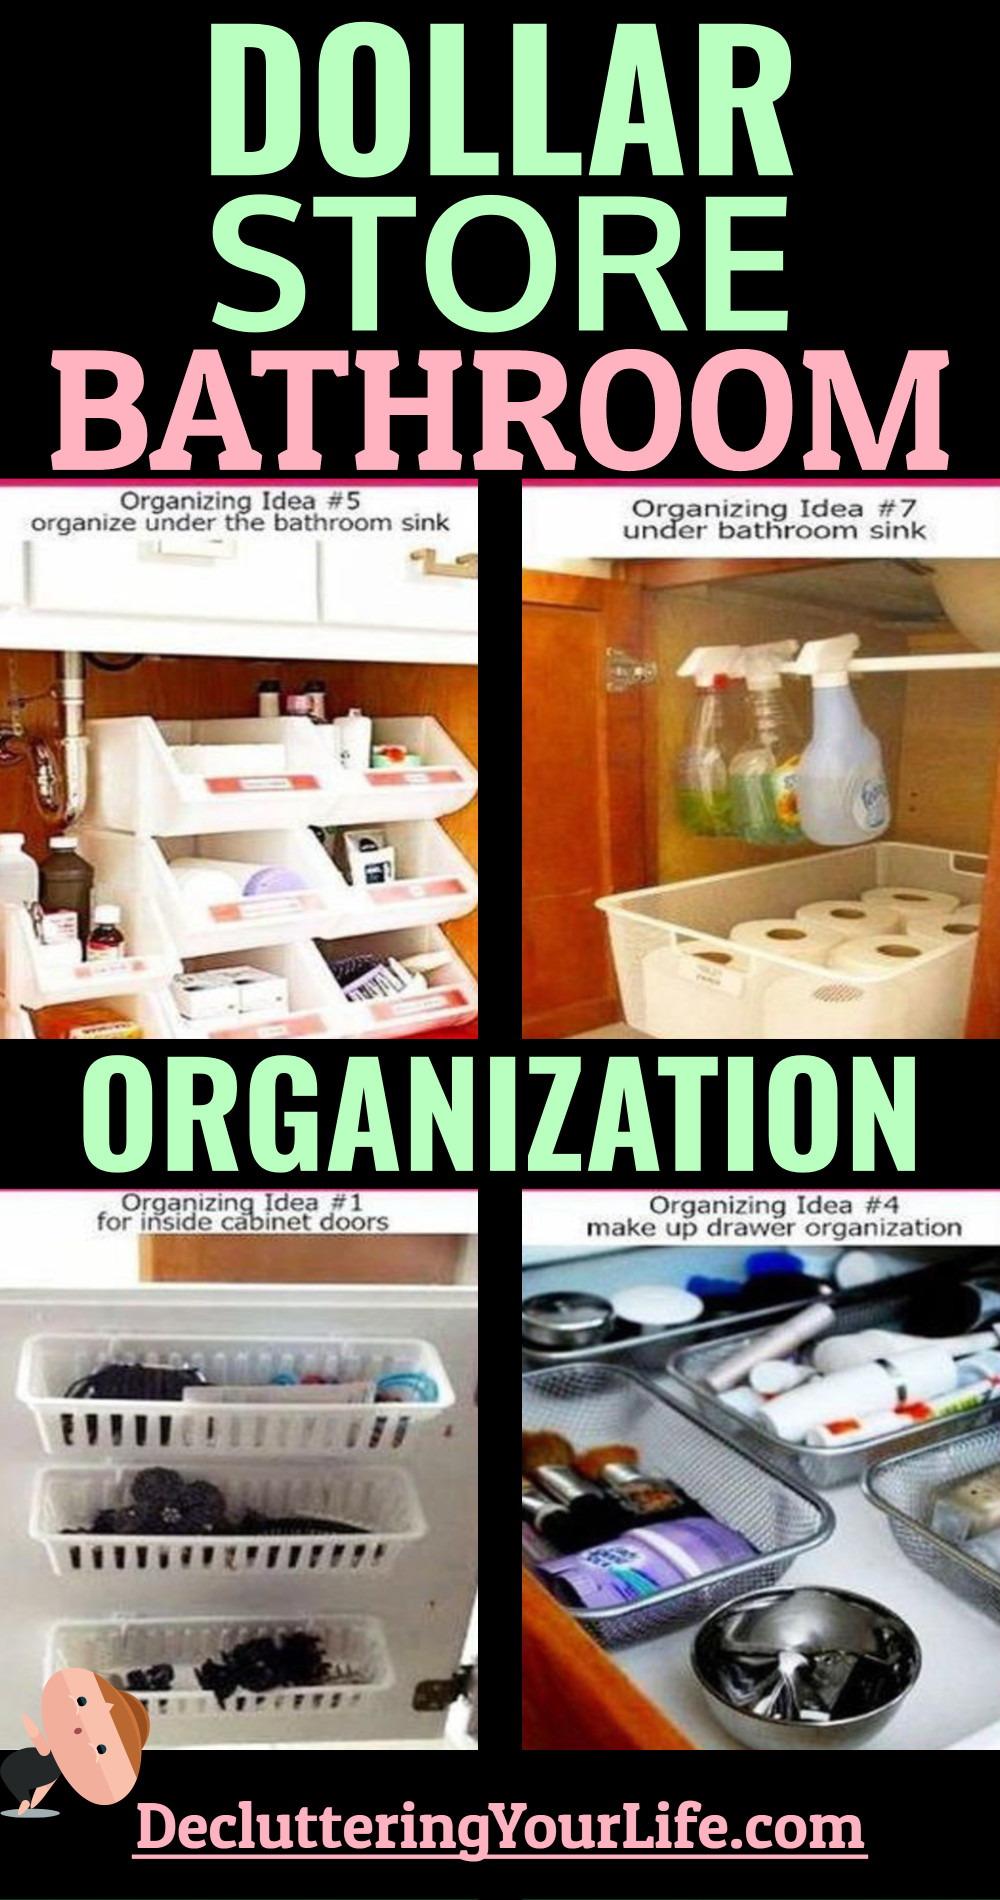 Dollar Store Bathroom Organization